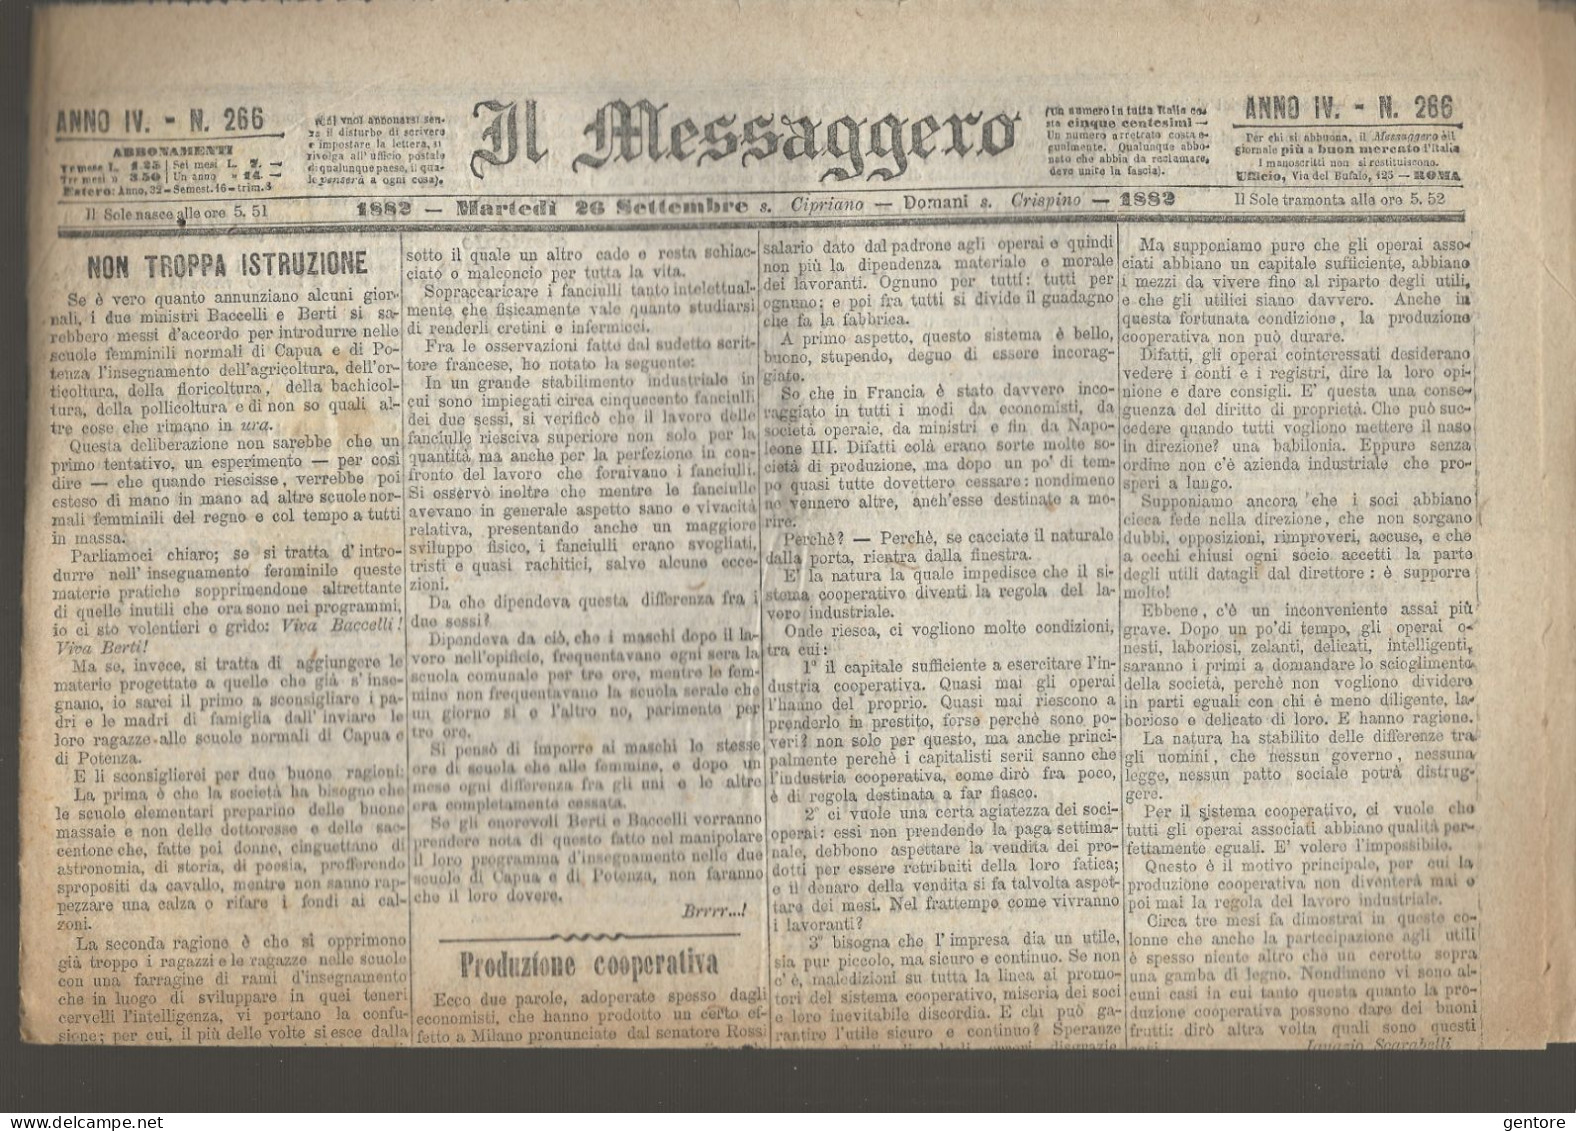 IL MESSAGGERO ANNO IV 11 Numeri Dal 25 Settembre Al 9 Ottobre 1882 ORIGINALI In BUONE CONDIZIONI - Old Books